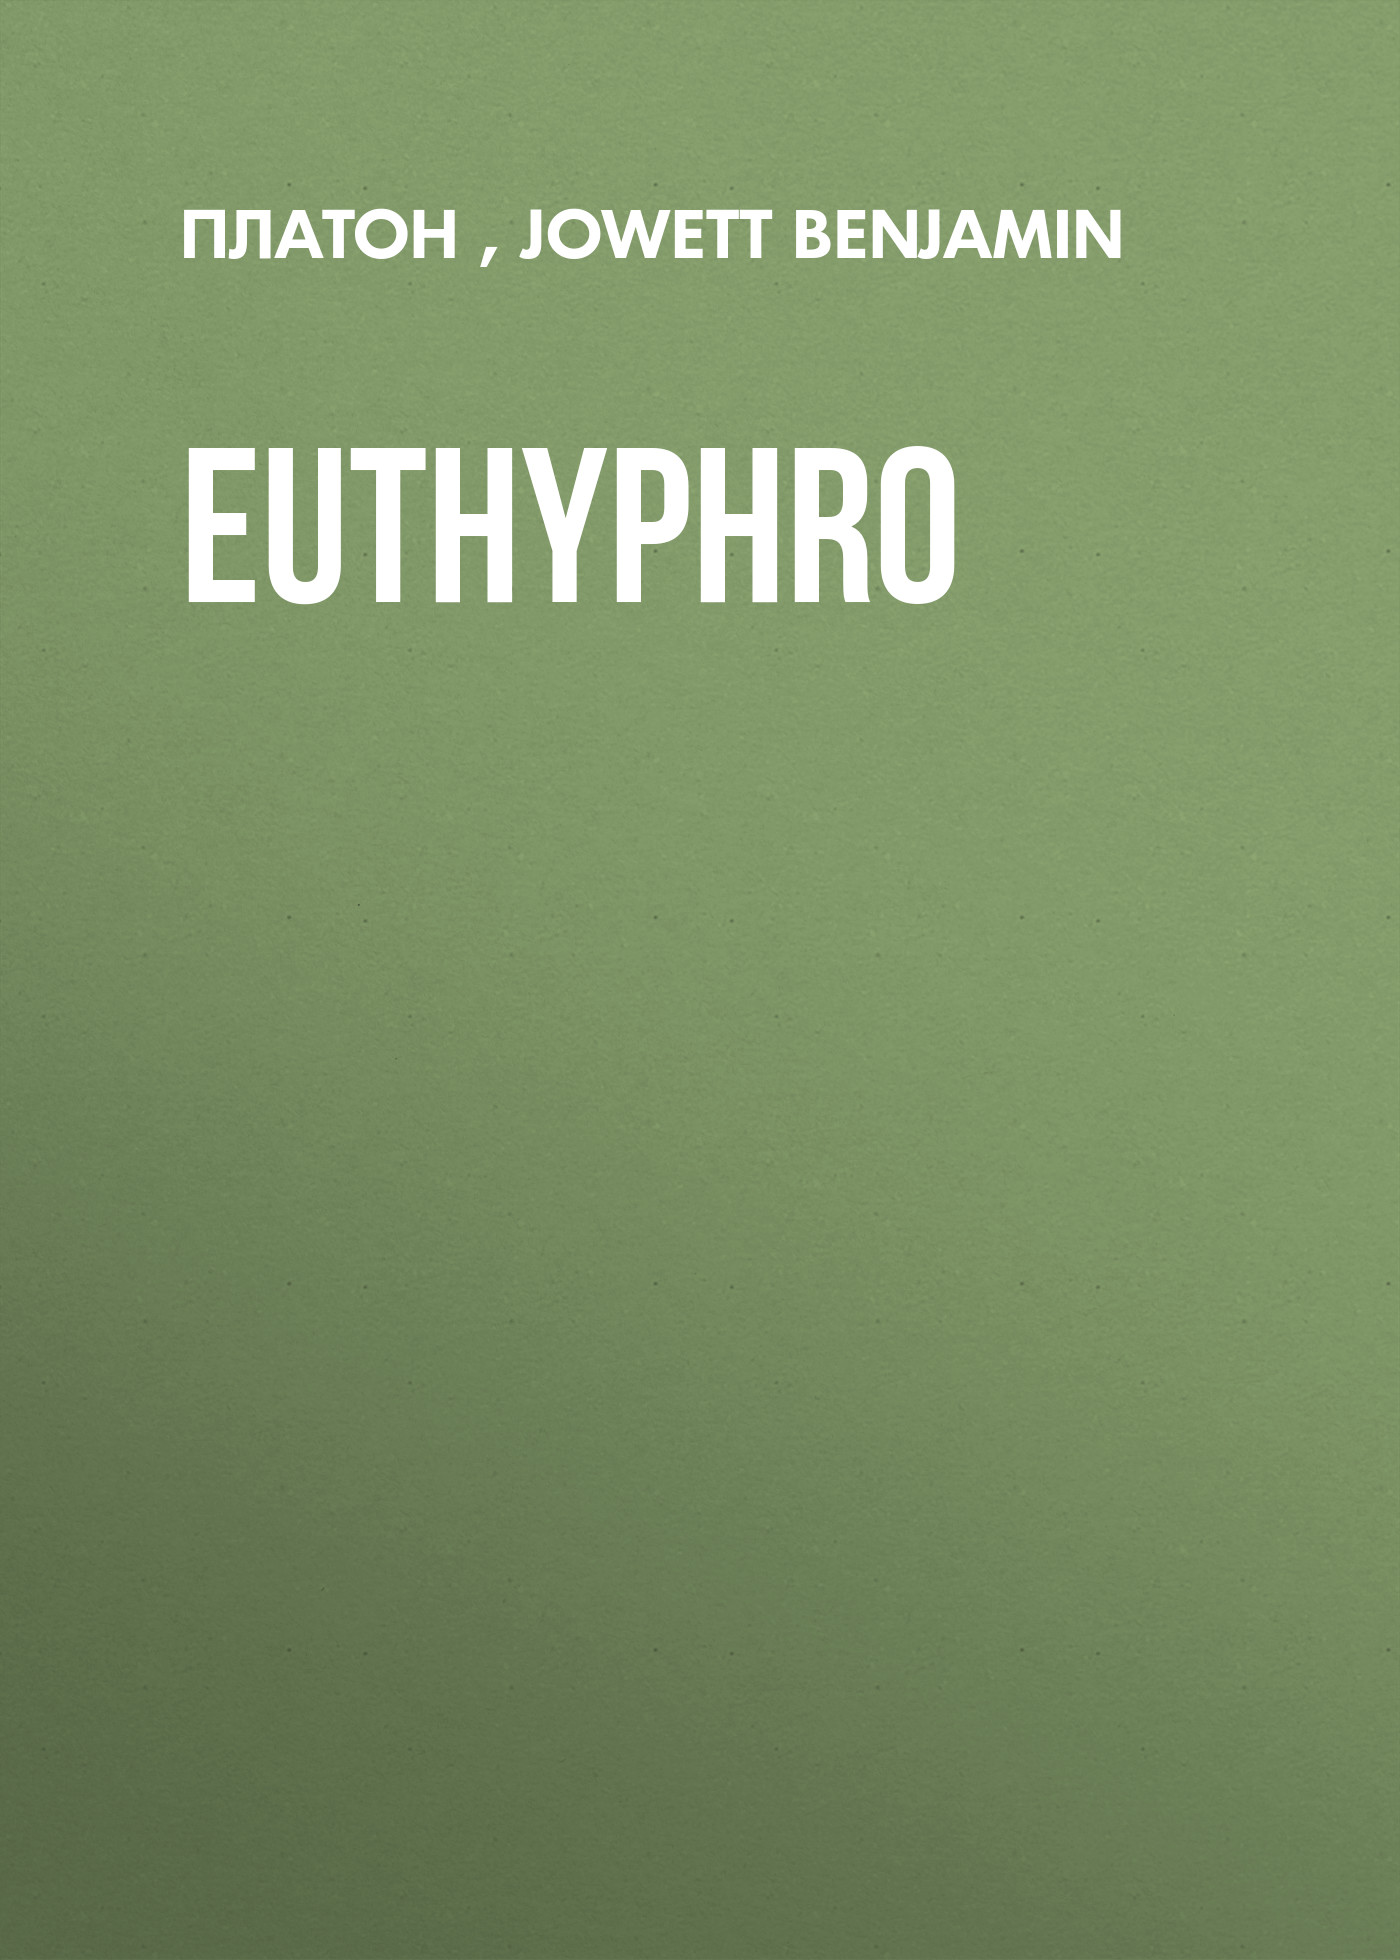 Книга Euthyphro из серии , созданная Benjamin Jowett,  Платон, может относится к жанру Философия, Зарубежная старинная литература, Зарубежная классика. Стоимость электронной книги Euthyphro с идентификатором 25293171 составляет 0 руб.